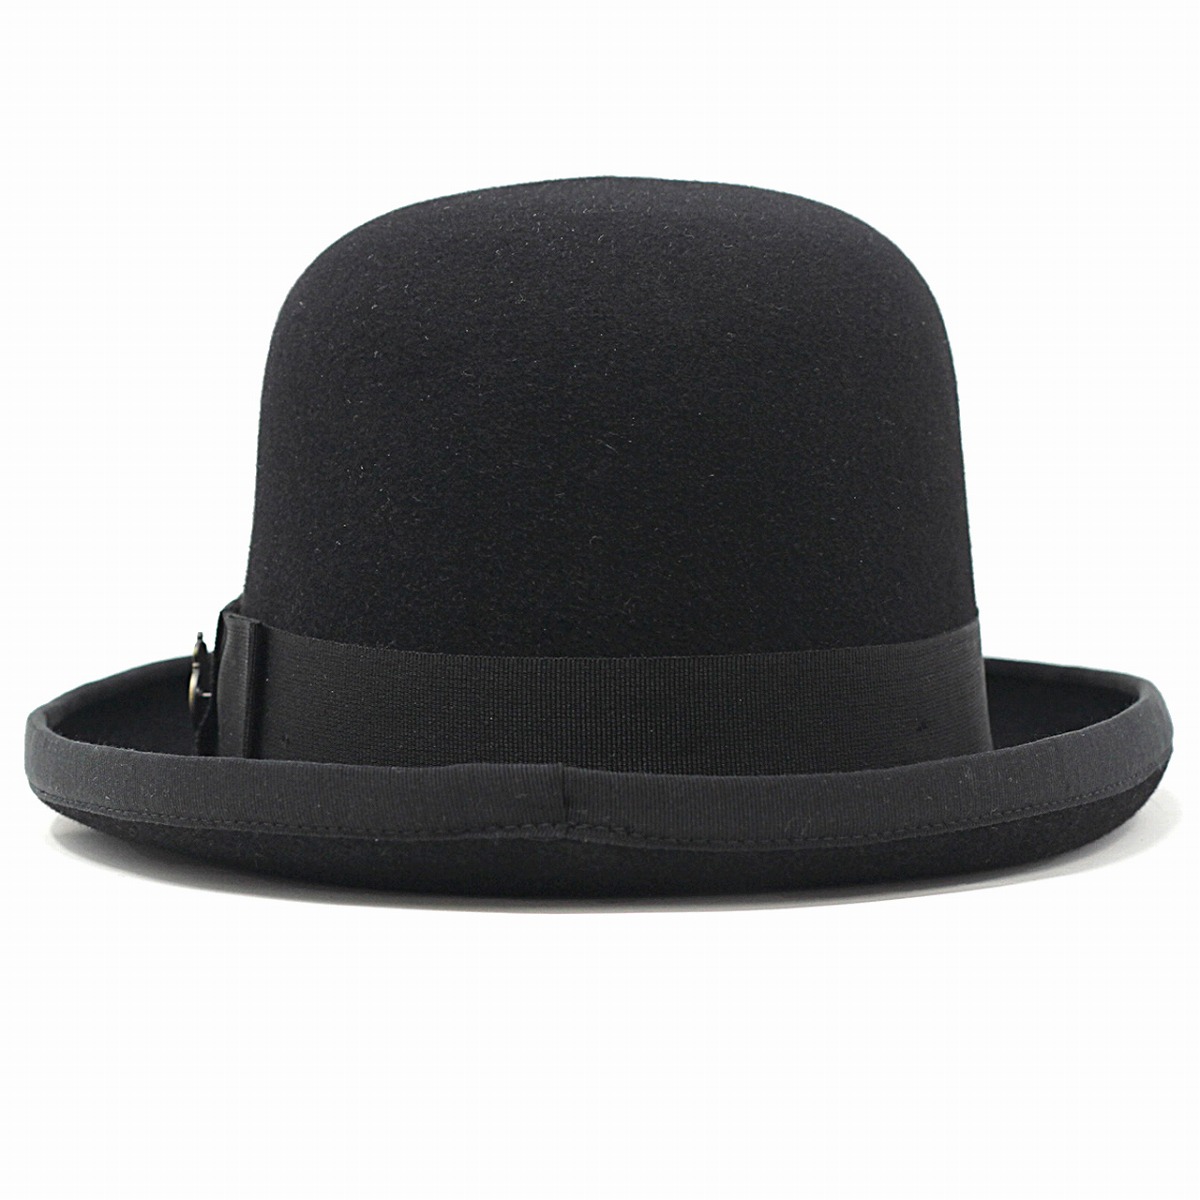 クリスティーズ フェルト ボーラーハット ホンブルグ ラビットファー ハット イギリス製 高級 帽子 秋 冬 CHRISTYS' LONDON 紳士  帽子 56.5cm 60cm 62cm / 黒 ブラック [ boater hat ] [ fedora hat ] 父の日 ギフト 誕生日